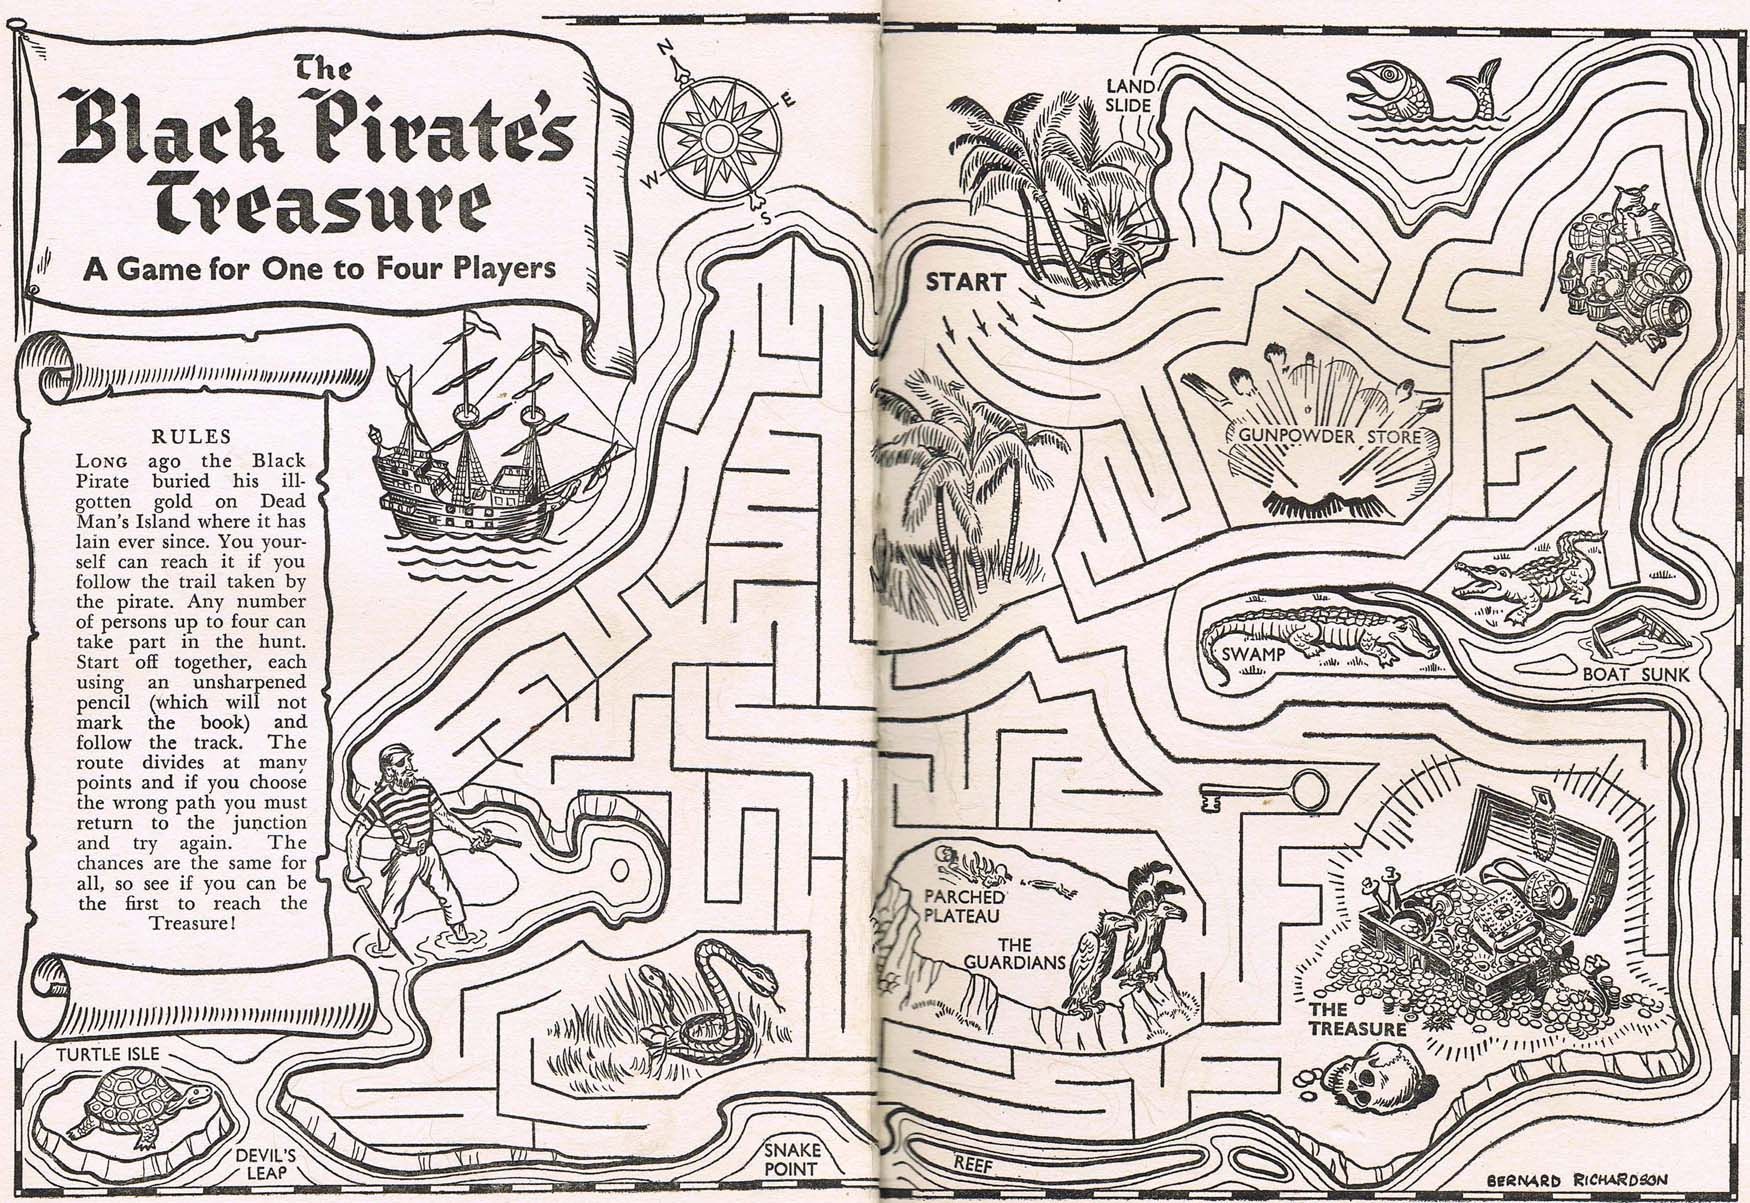 The Black Pirate's Treasure